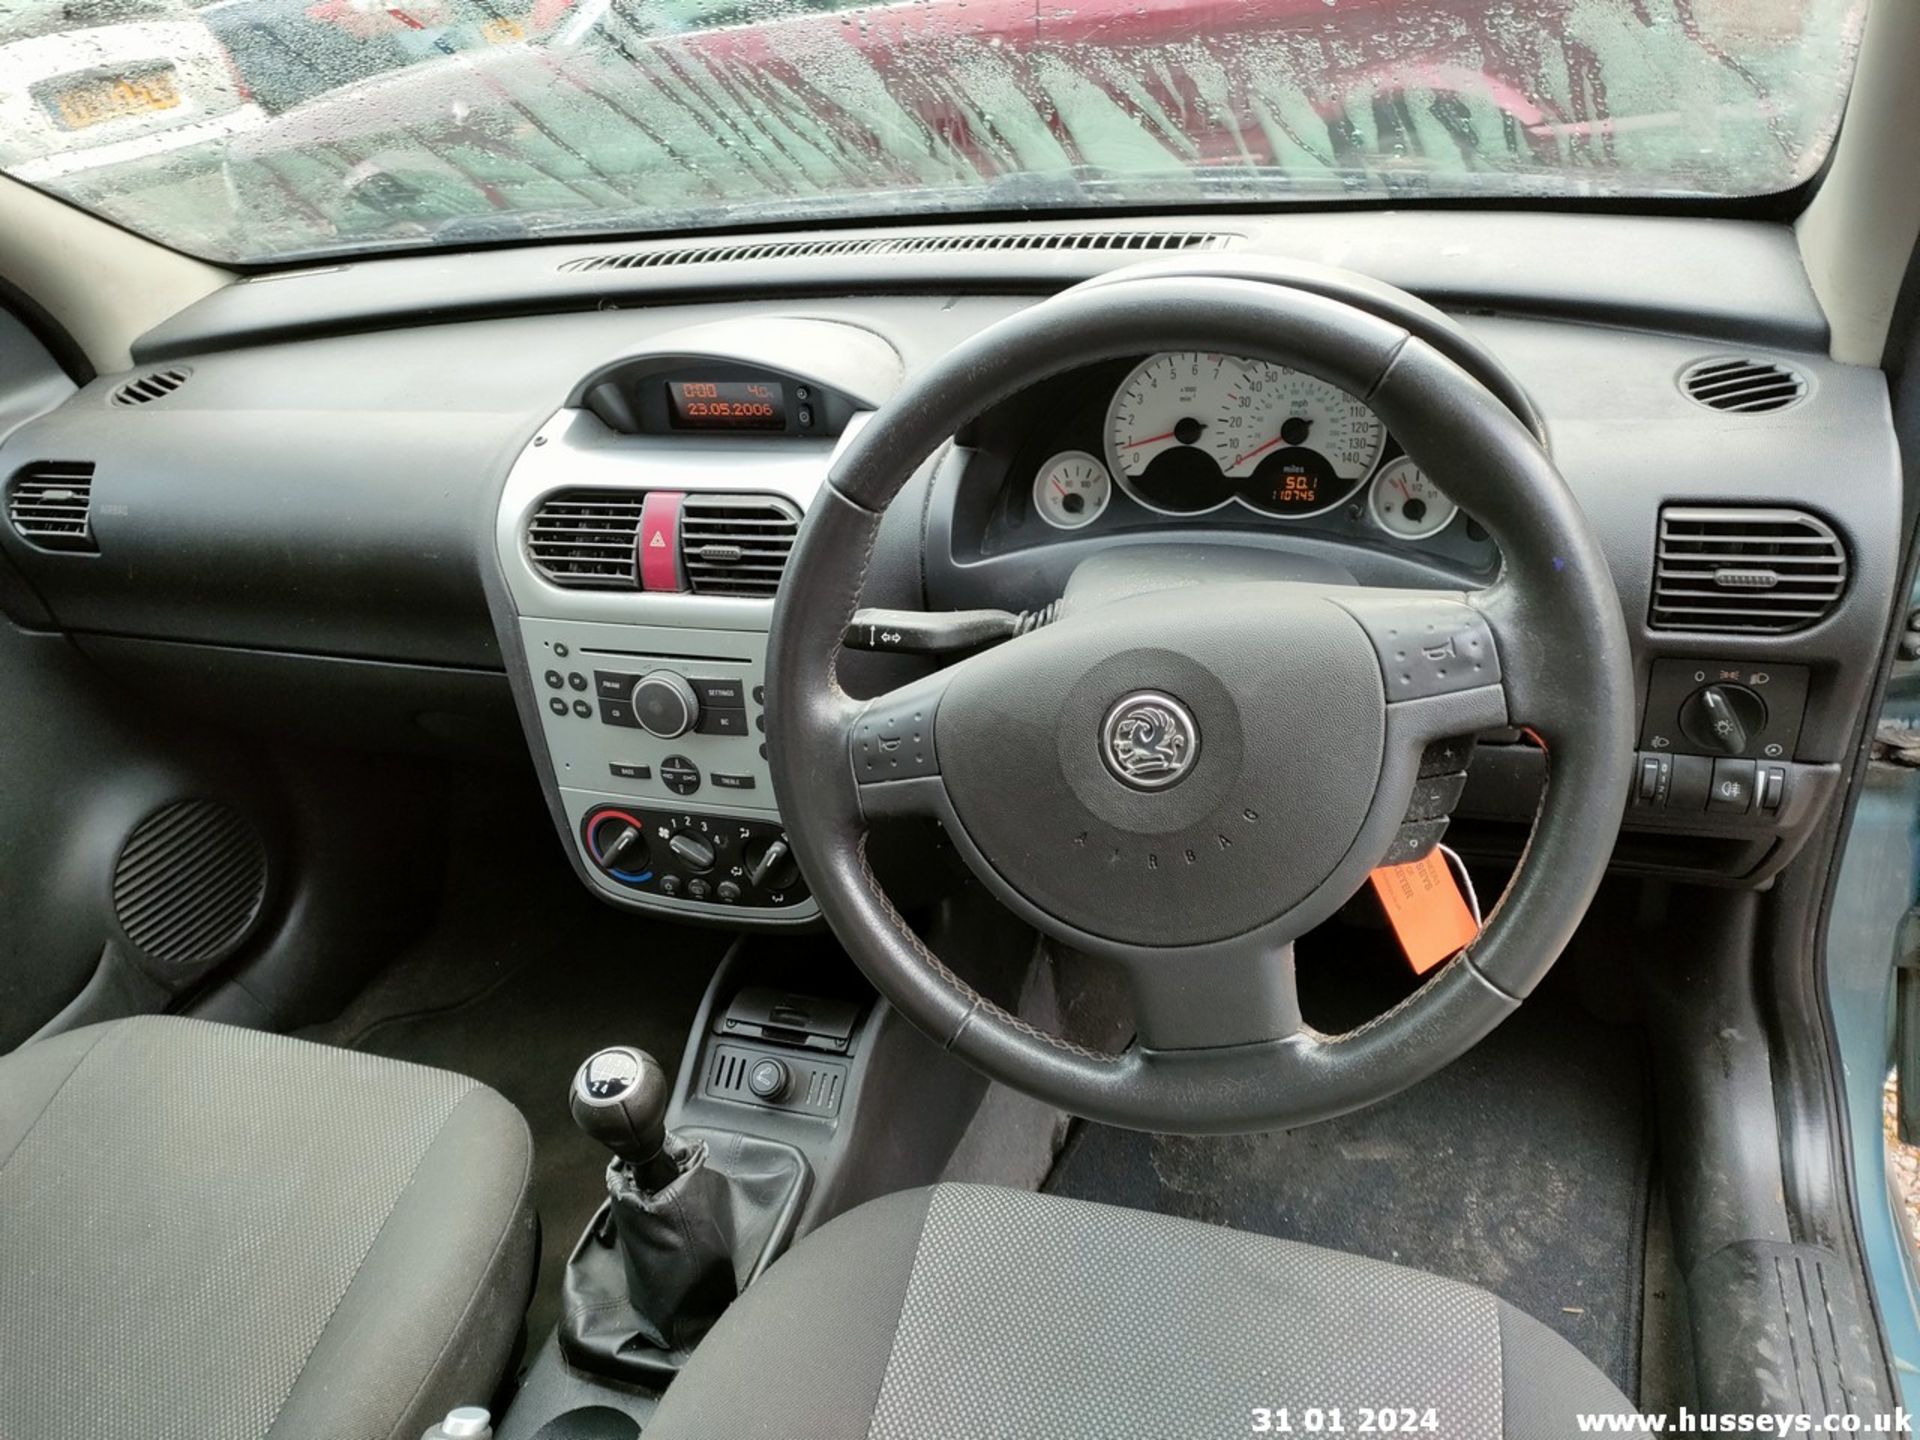 06/56 VAUXHALL CORSA DESIGN 16V TWINPORT - 1364cc 5dr Hatchback (Grey, 110k) - Image 39 of 46